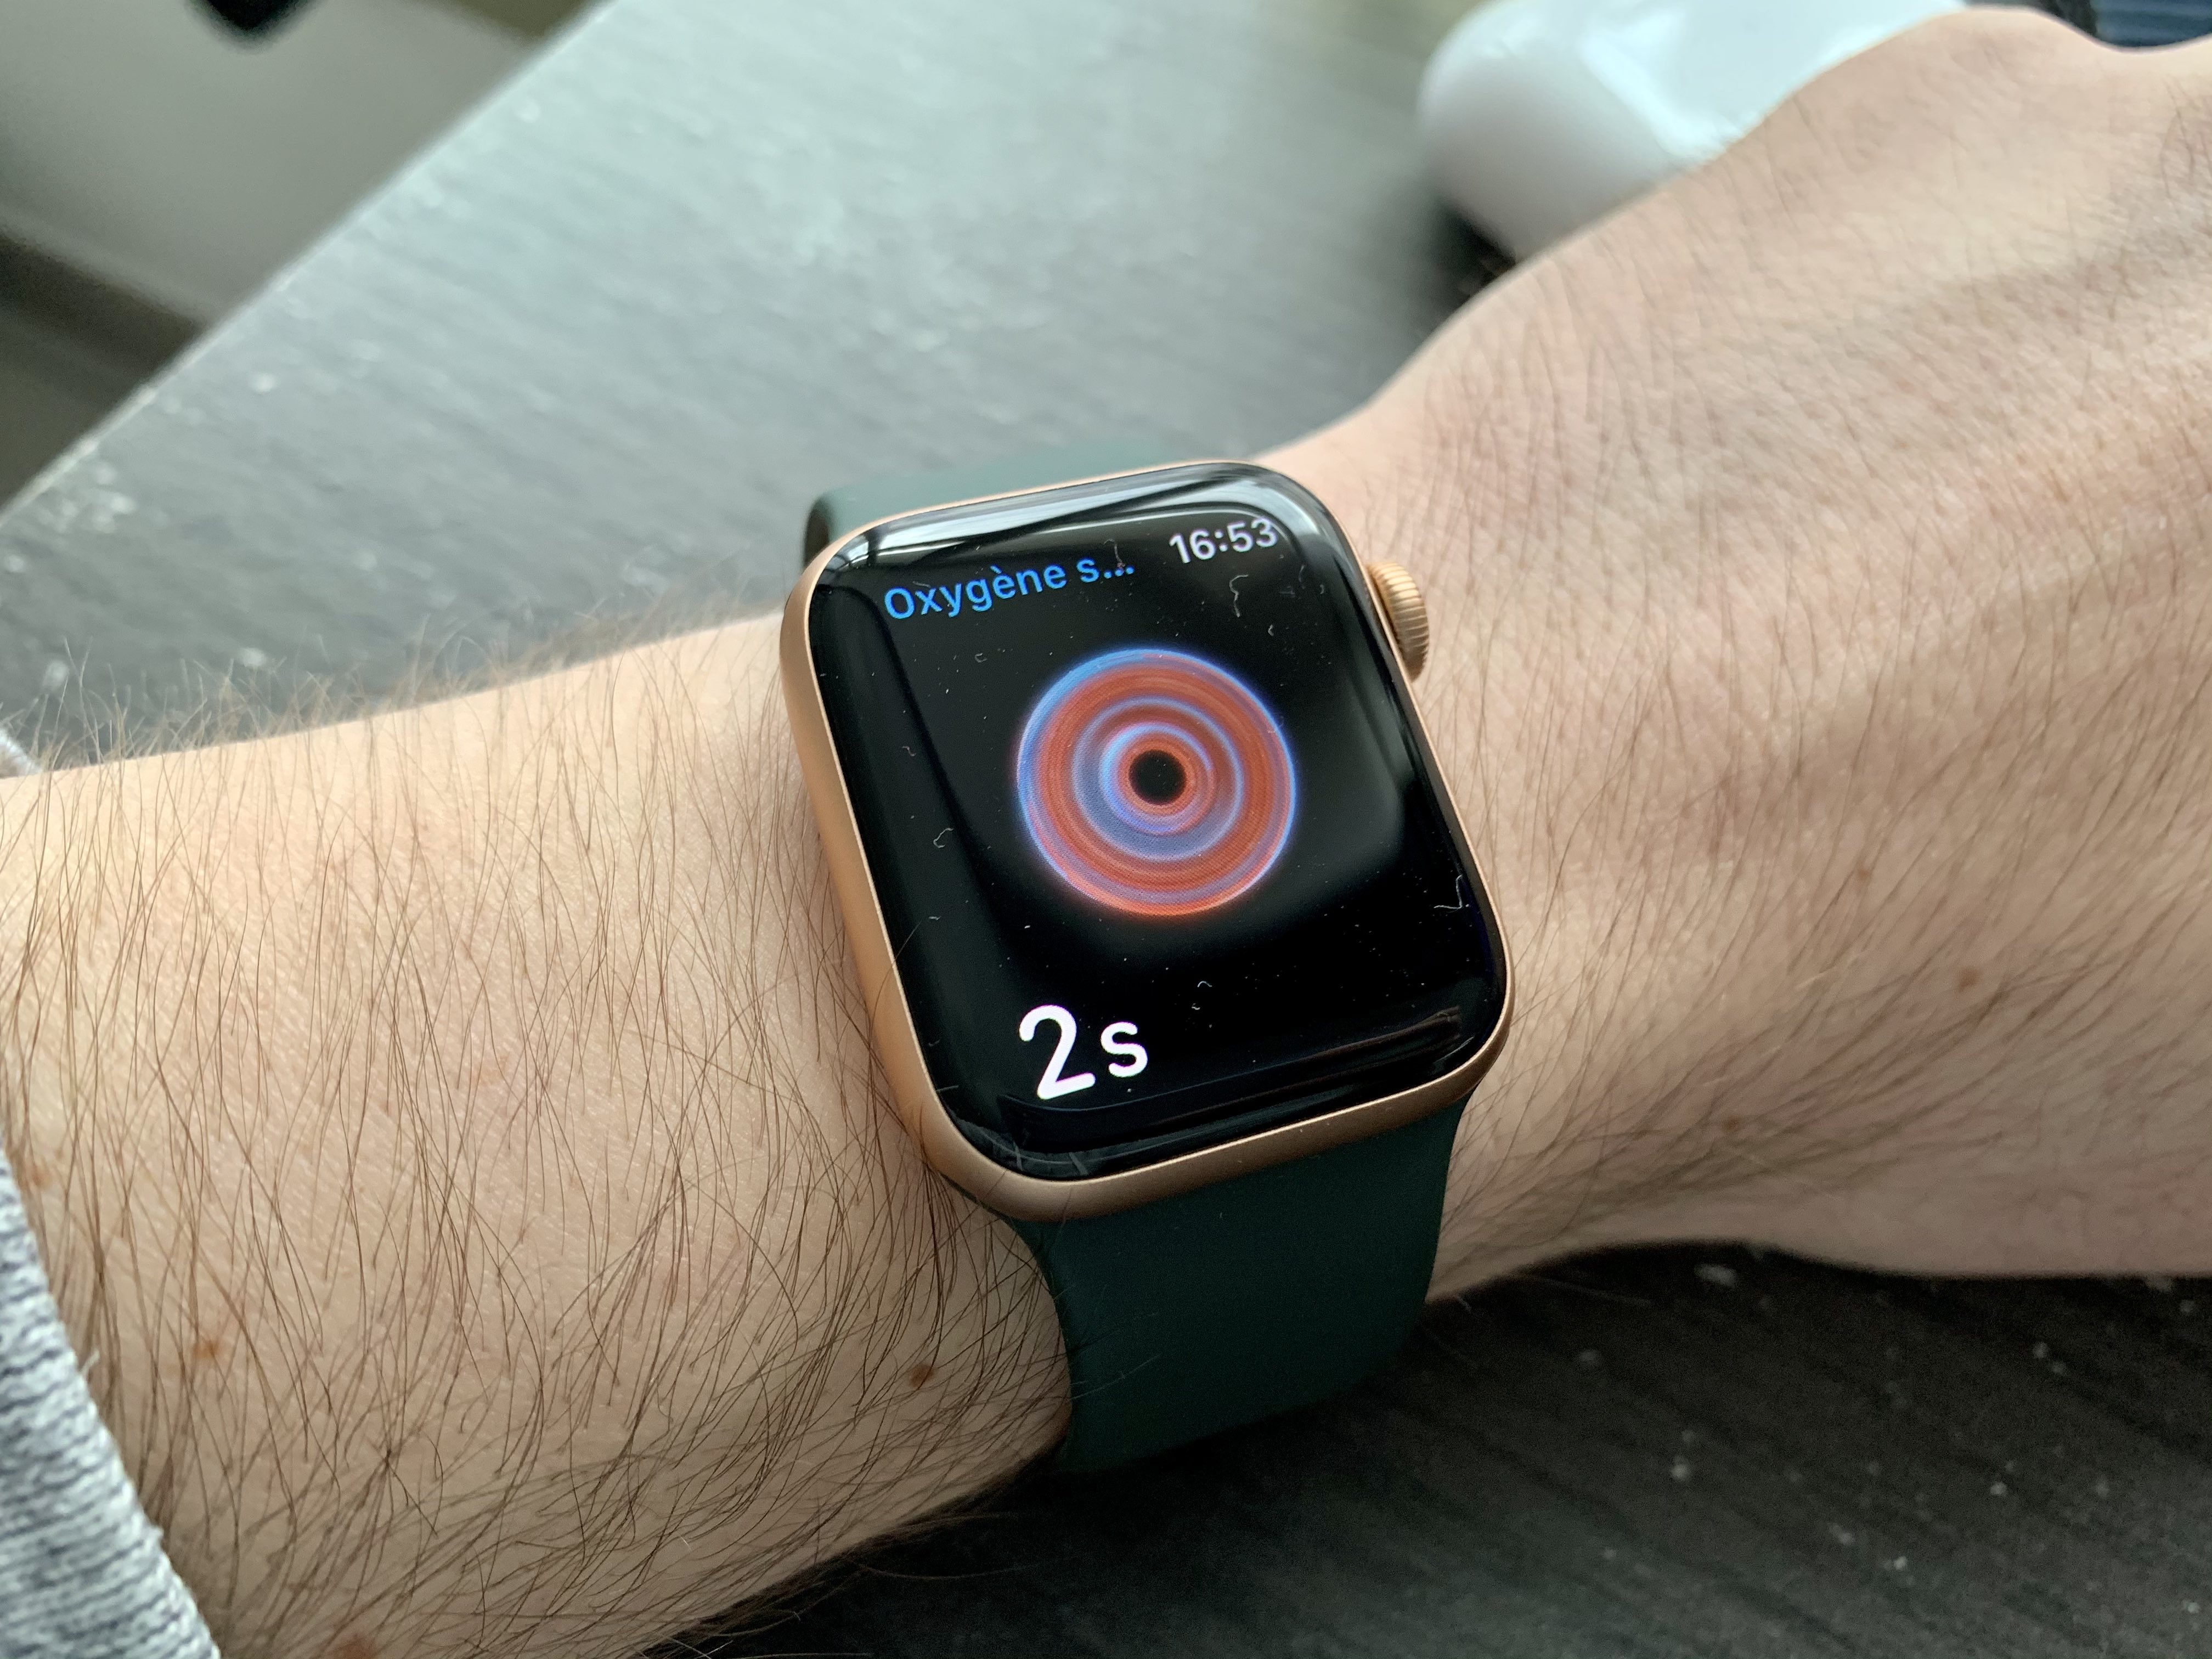 La nouvelle Apple Watch monitorerait la glycémie grâce à un nouveau capteur